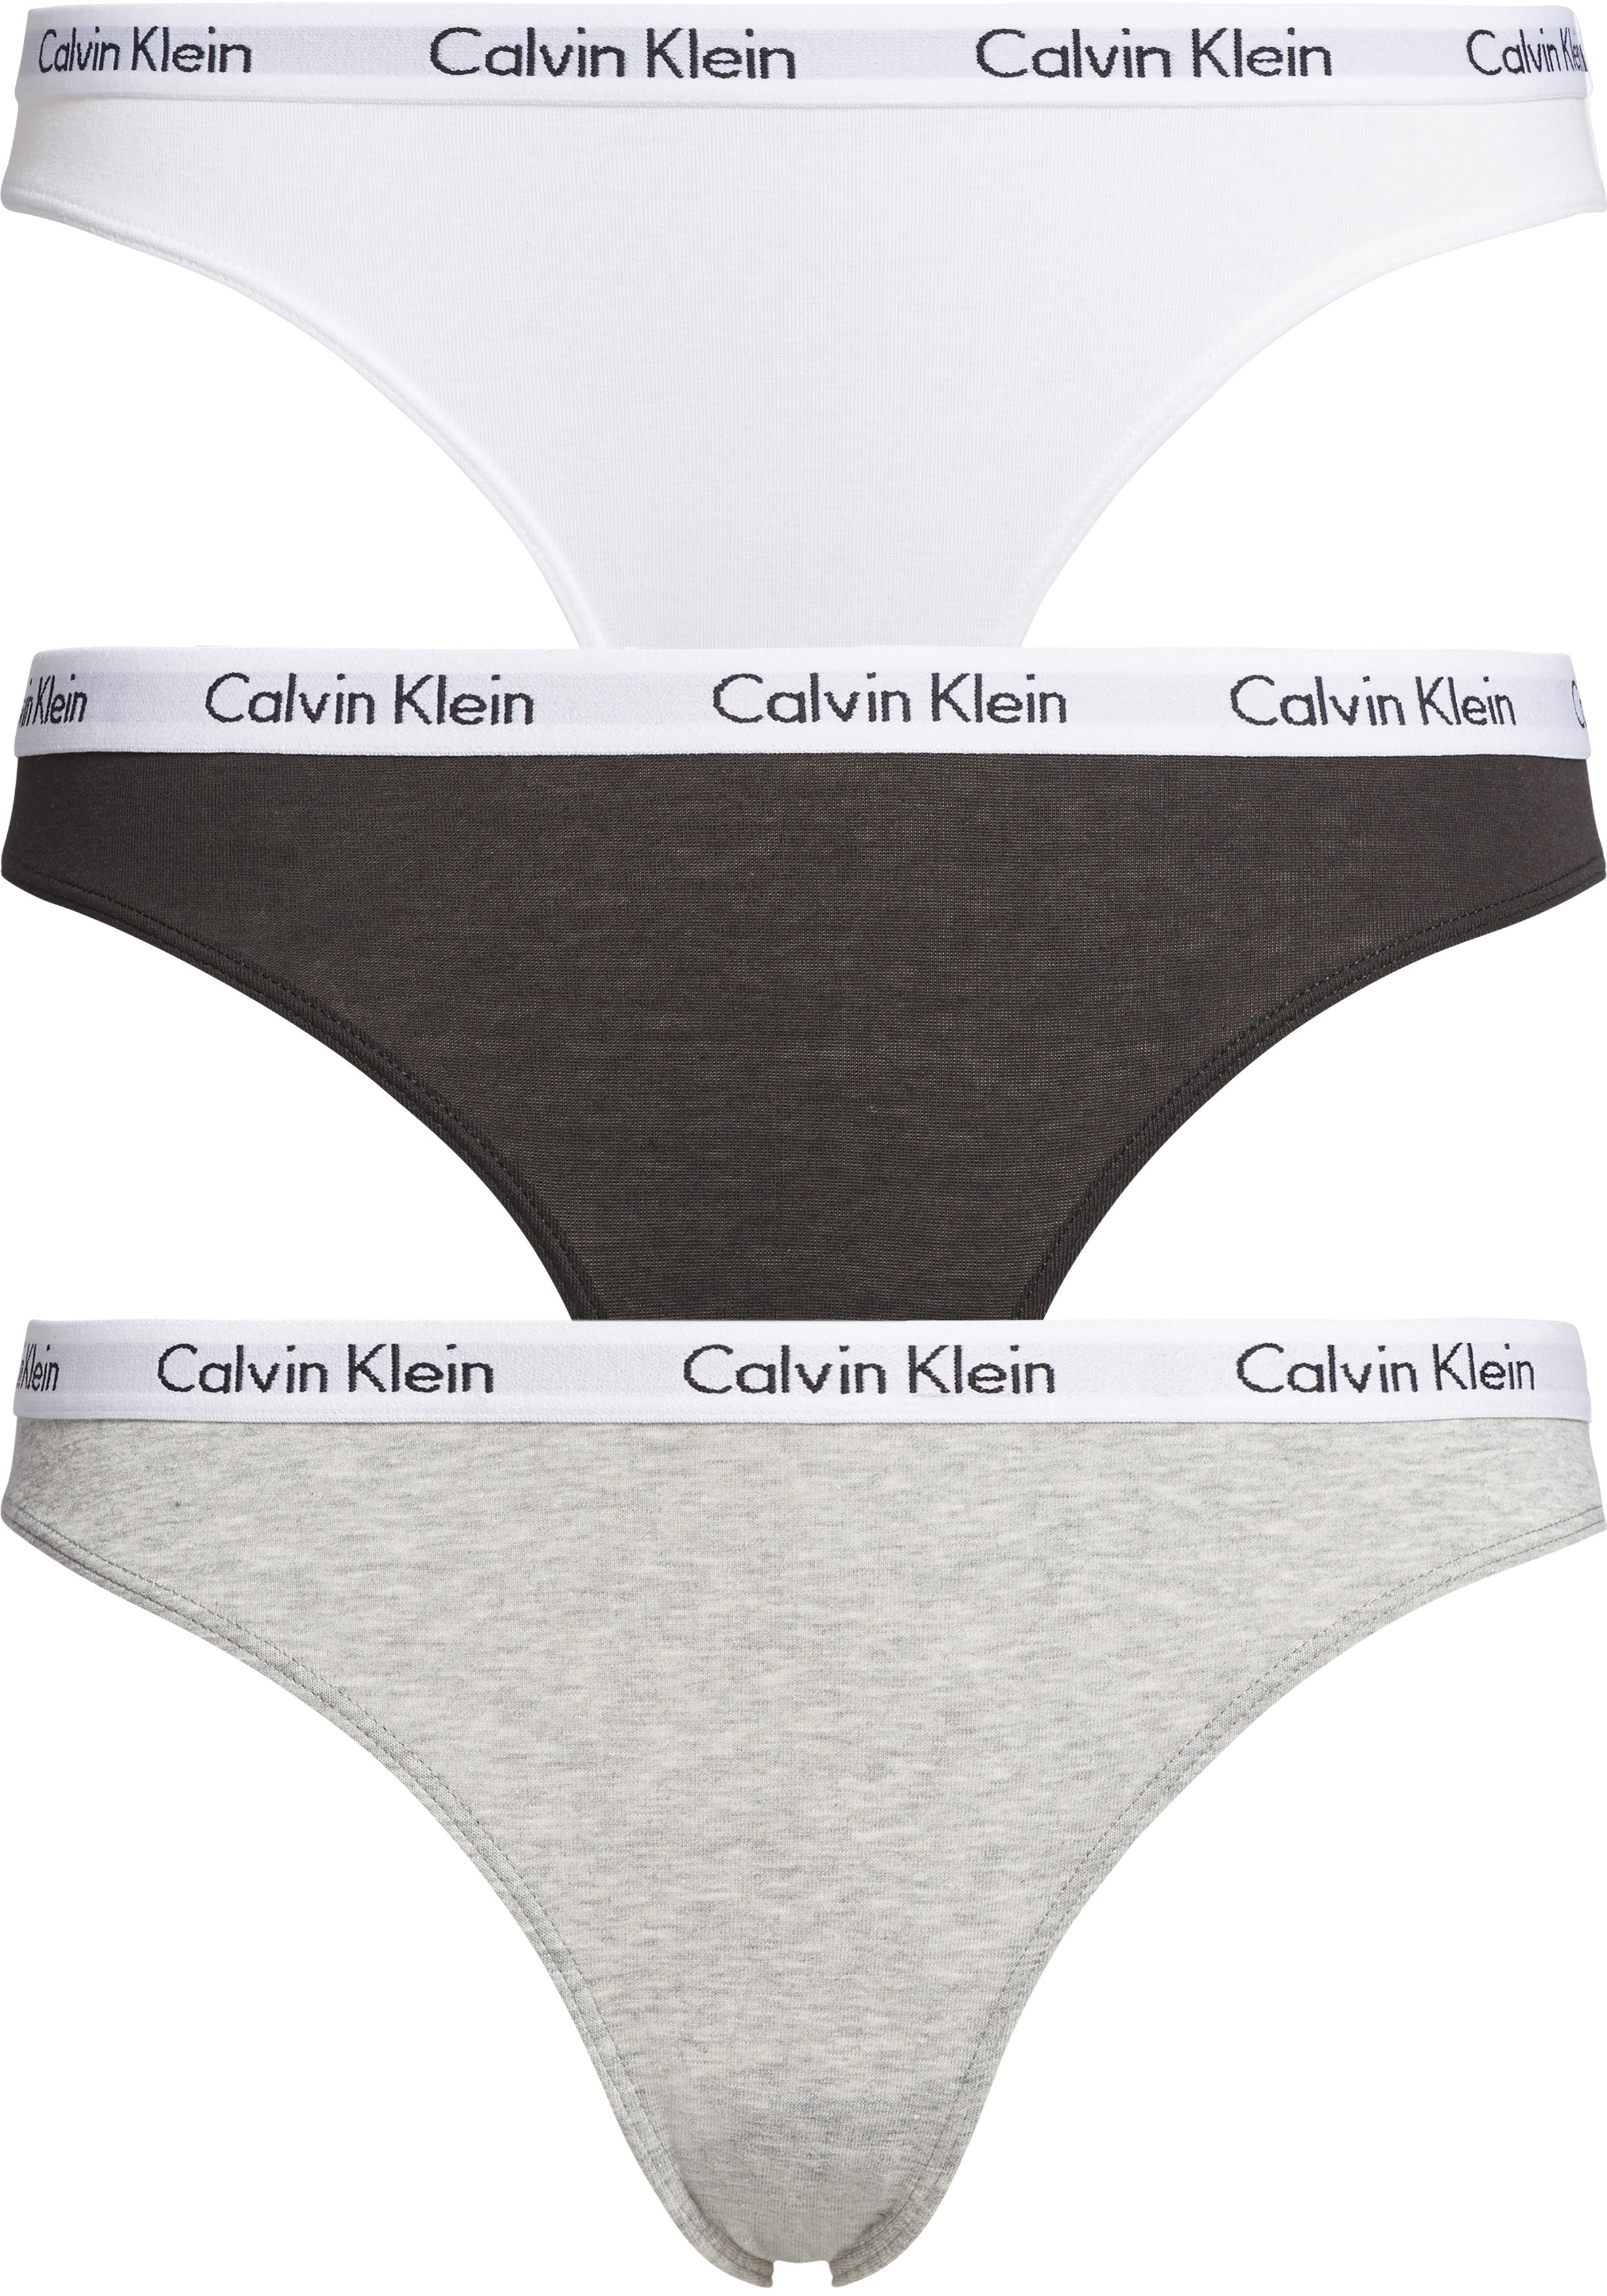 Calvin Klein dames slips (3-pack), wit en grijs - Shop de nieuwste voorjaarsmode